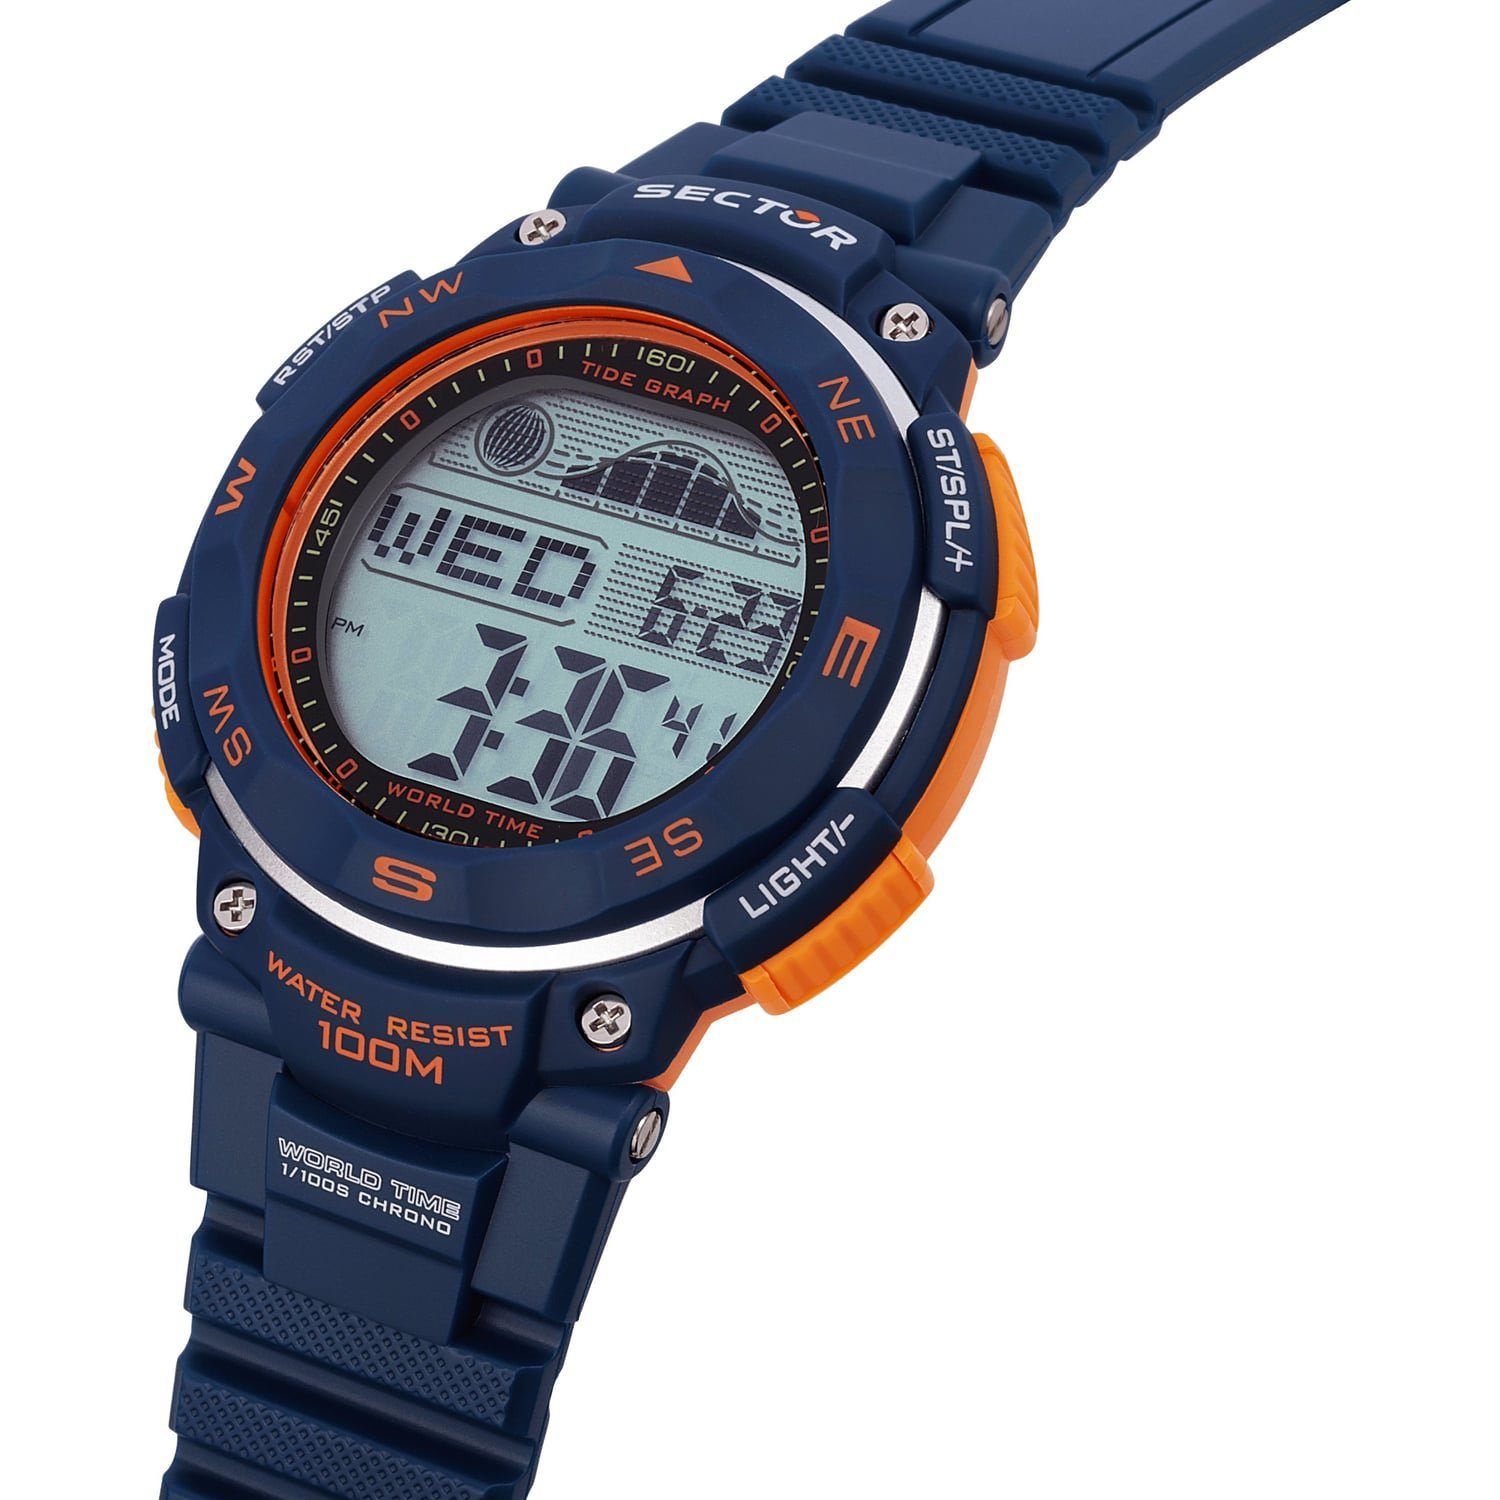 groß Armbanduhr (40,3x39,7mm), Armbanduhr Sector Digital, PURarmband Sector Herren eckig, blau, Digitaluhr Casual Herren